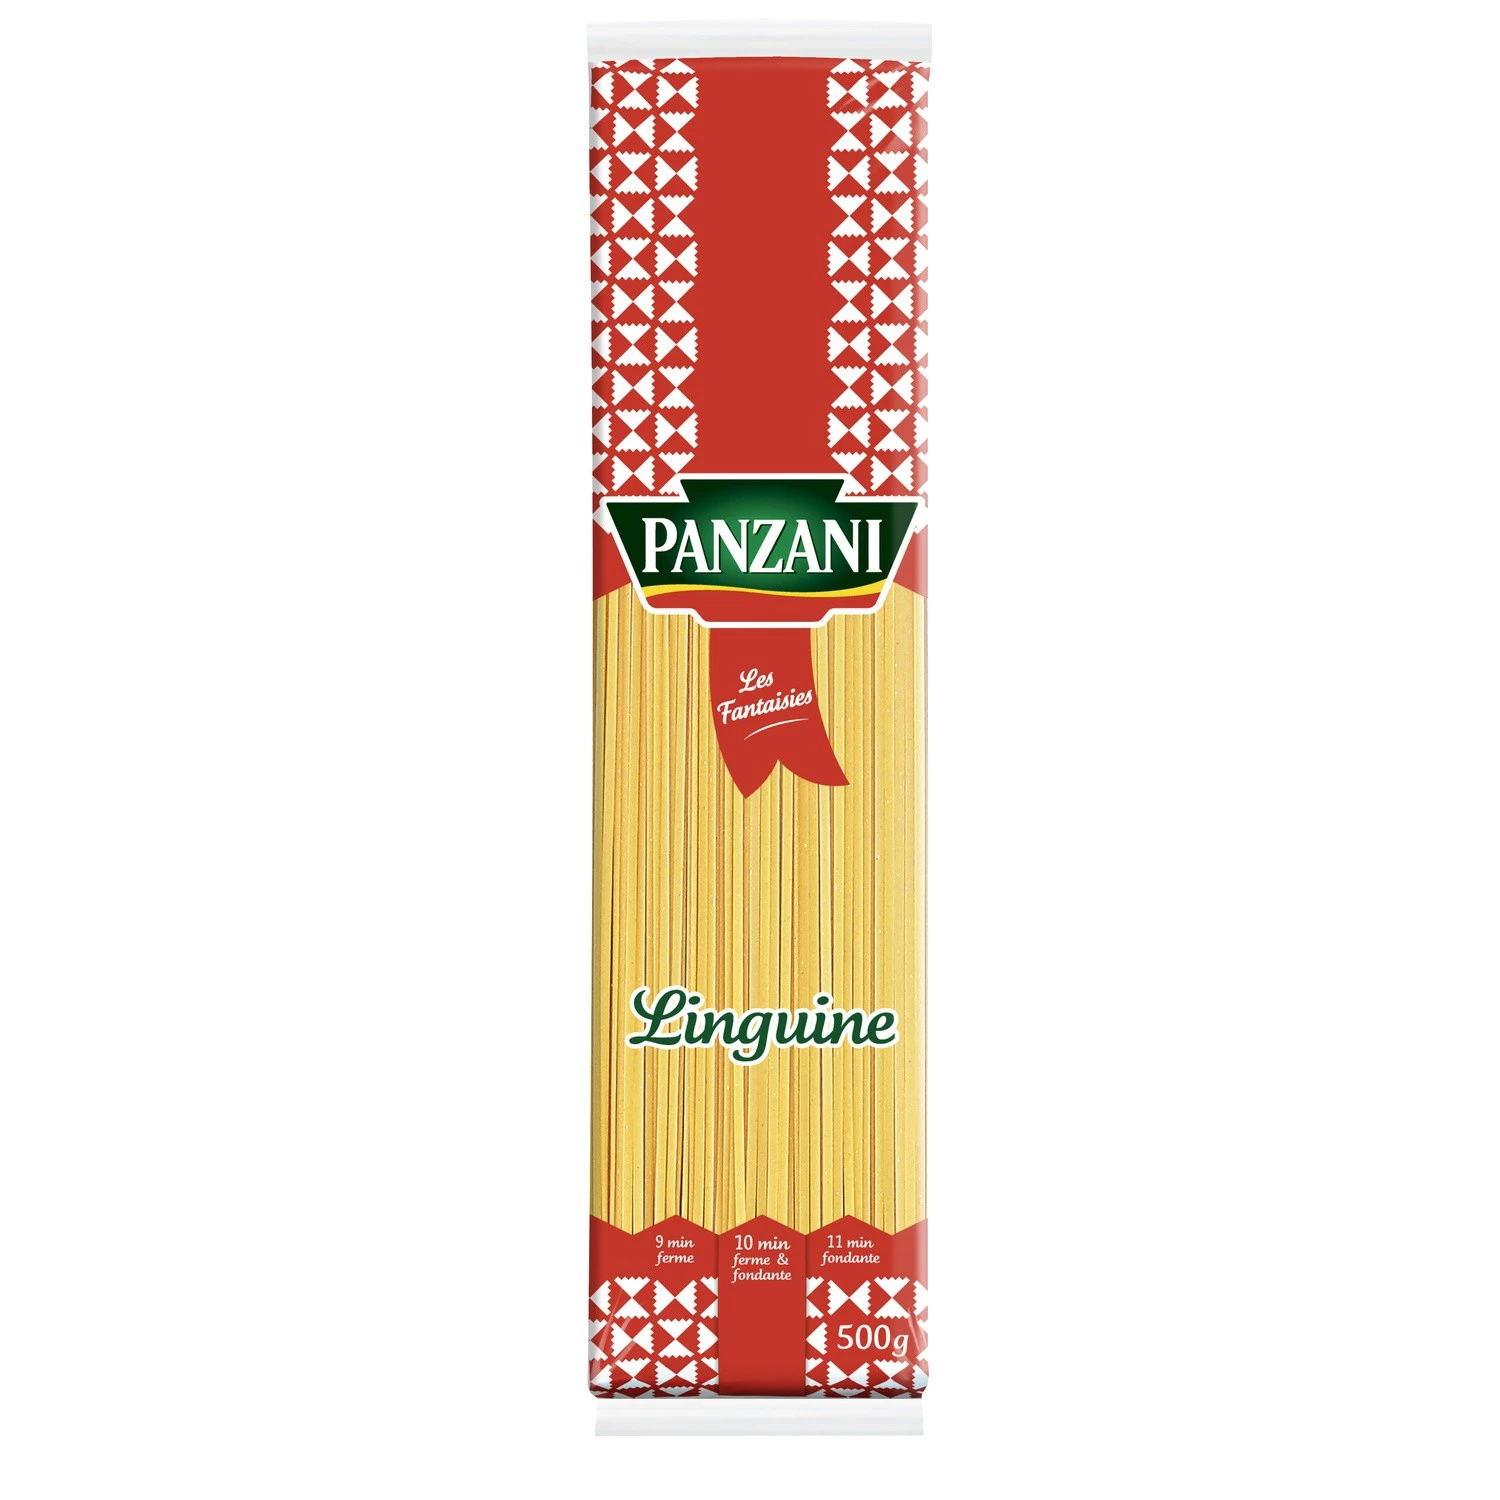 Massa Espaguete Linguine, 500g - PANZANI